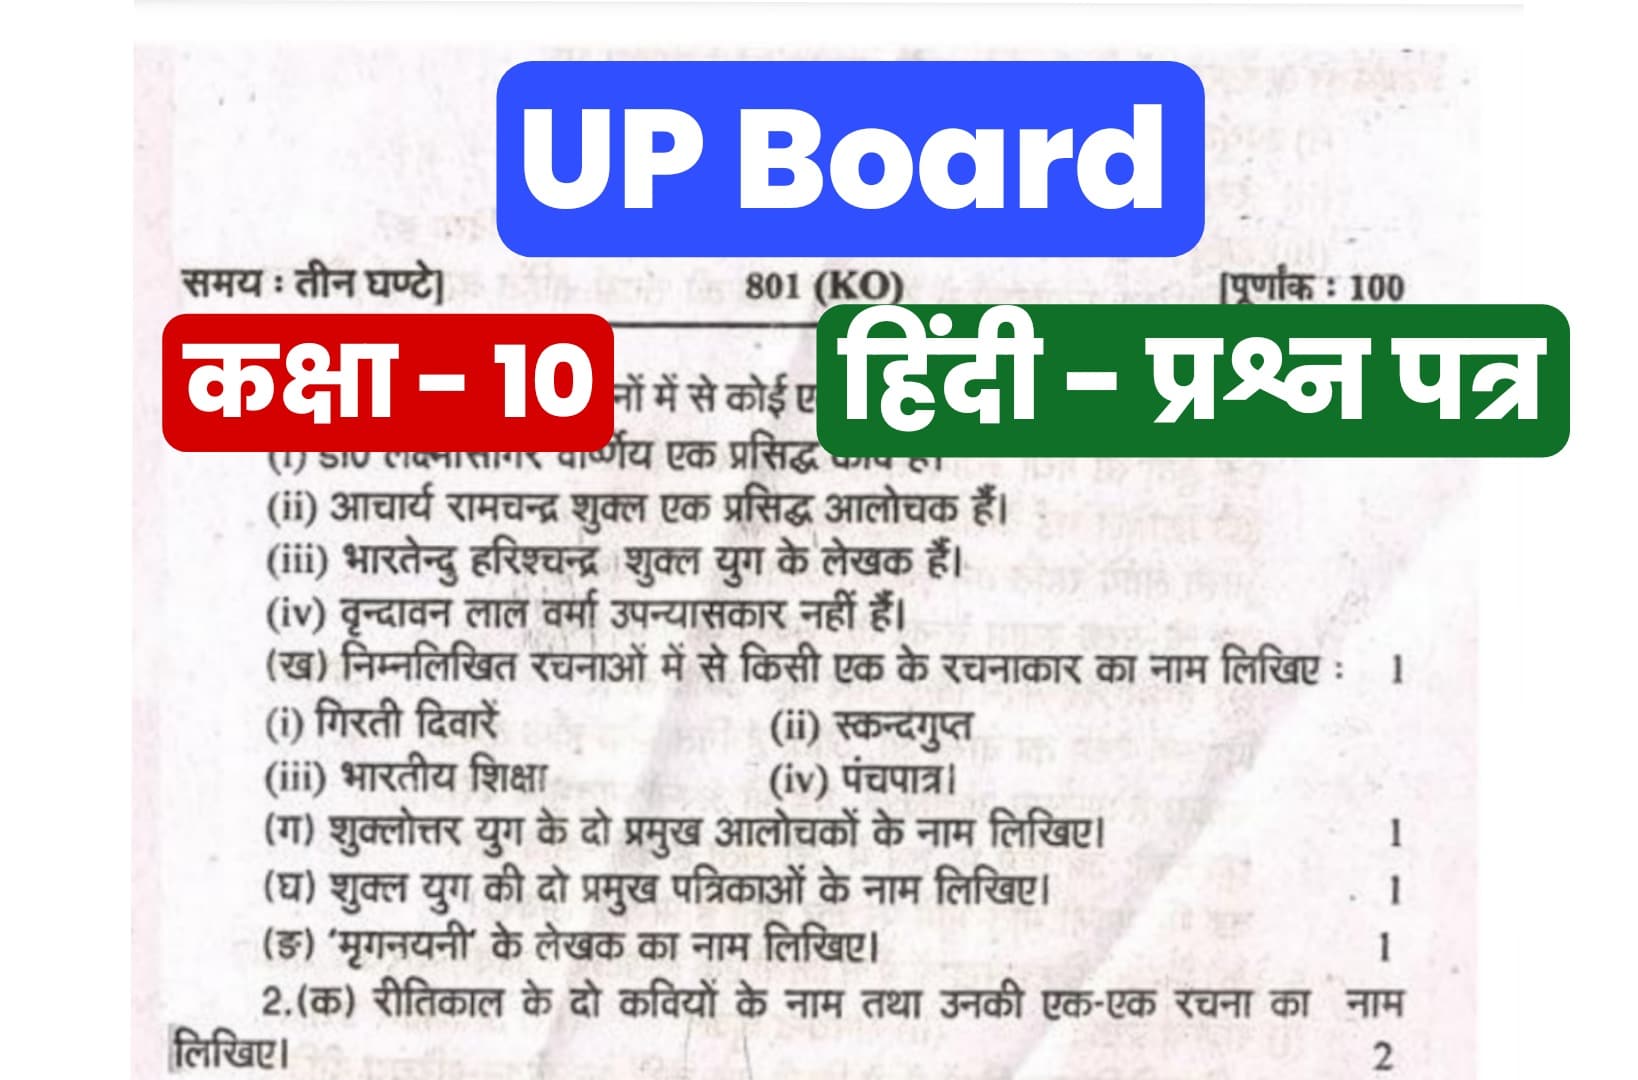 UP Board Class 10th Hindi Previous Year Paper : हिंदी विषय में पिछले साल आए थे ऐसे प्रश्न, पेपर करें डाउनलोड